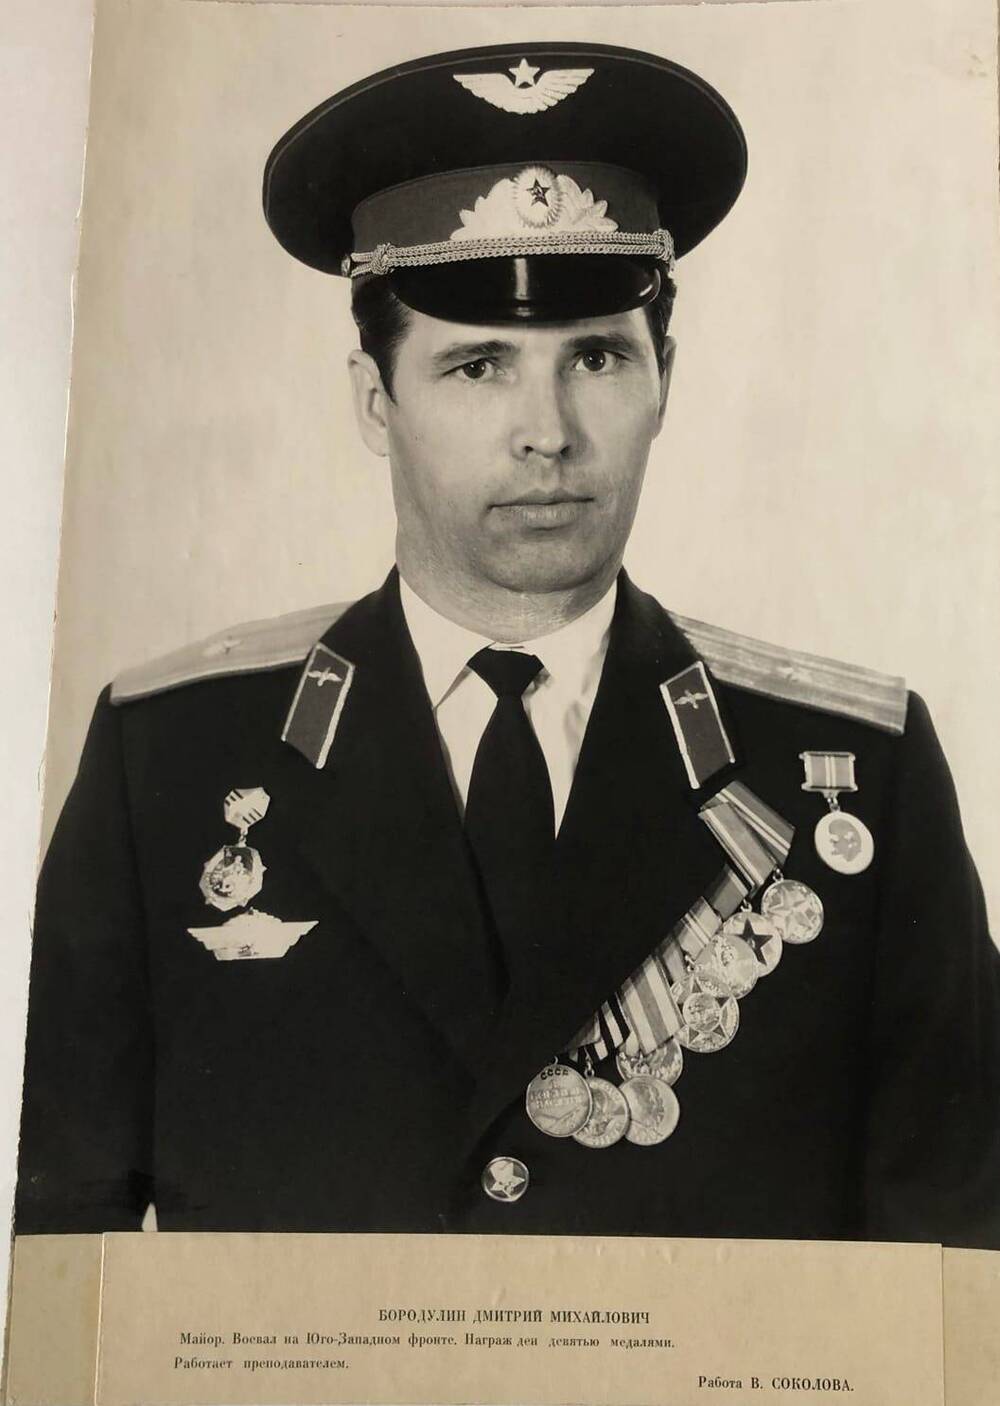 Фотография Бородулина Дмитрия Михайловича,  участника Великой Отечественной войны 1941-1945 гг.